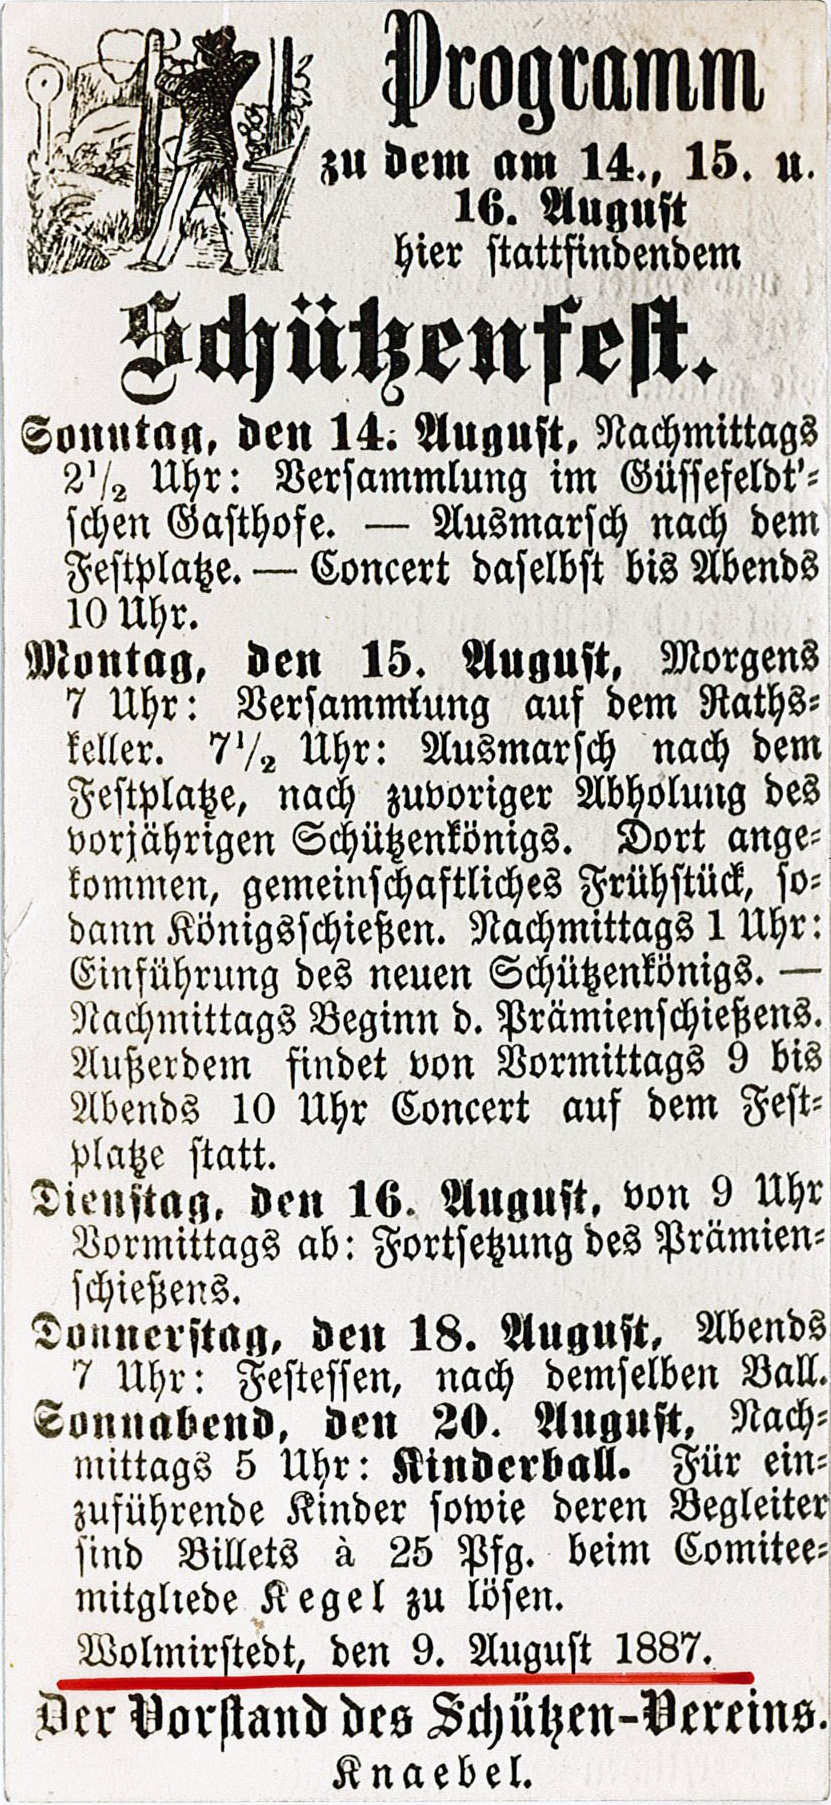 Programm zum Schützenfest am 14. bis 16. August 1887 (Reproduktion) (Museum Wolmirstedt RR-F)